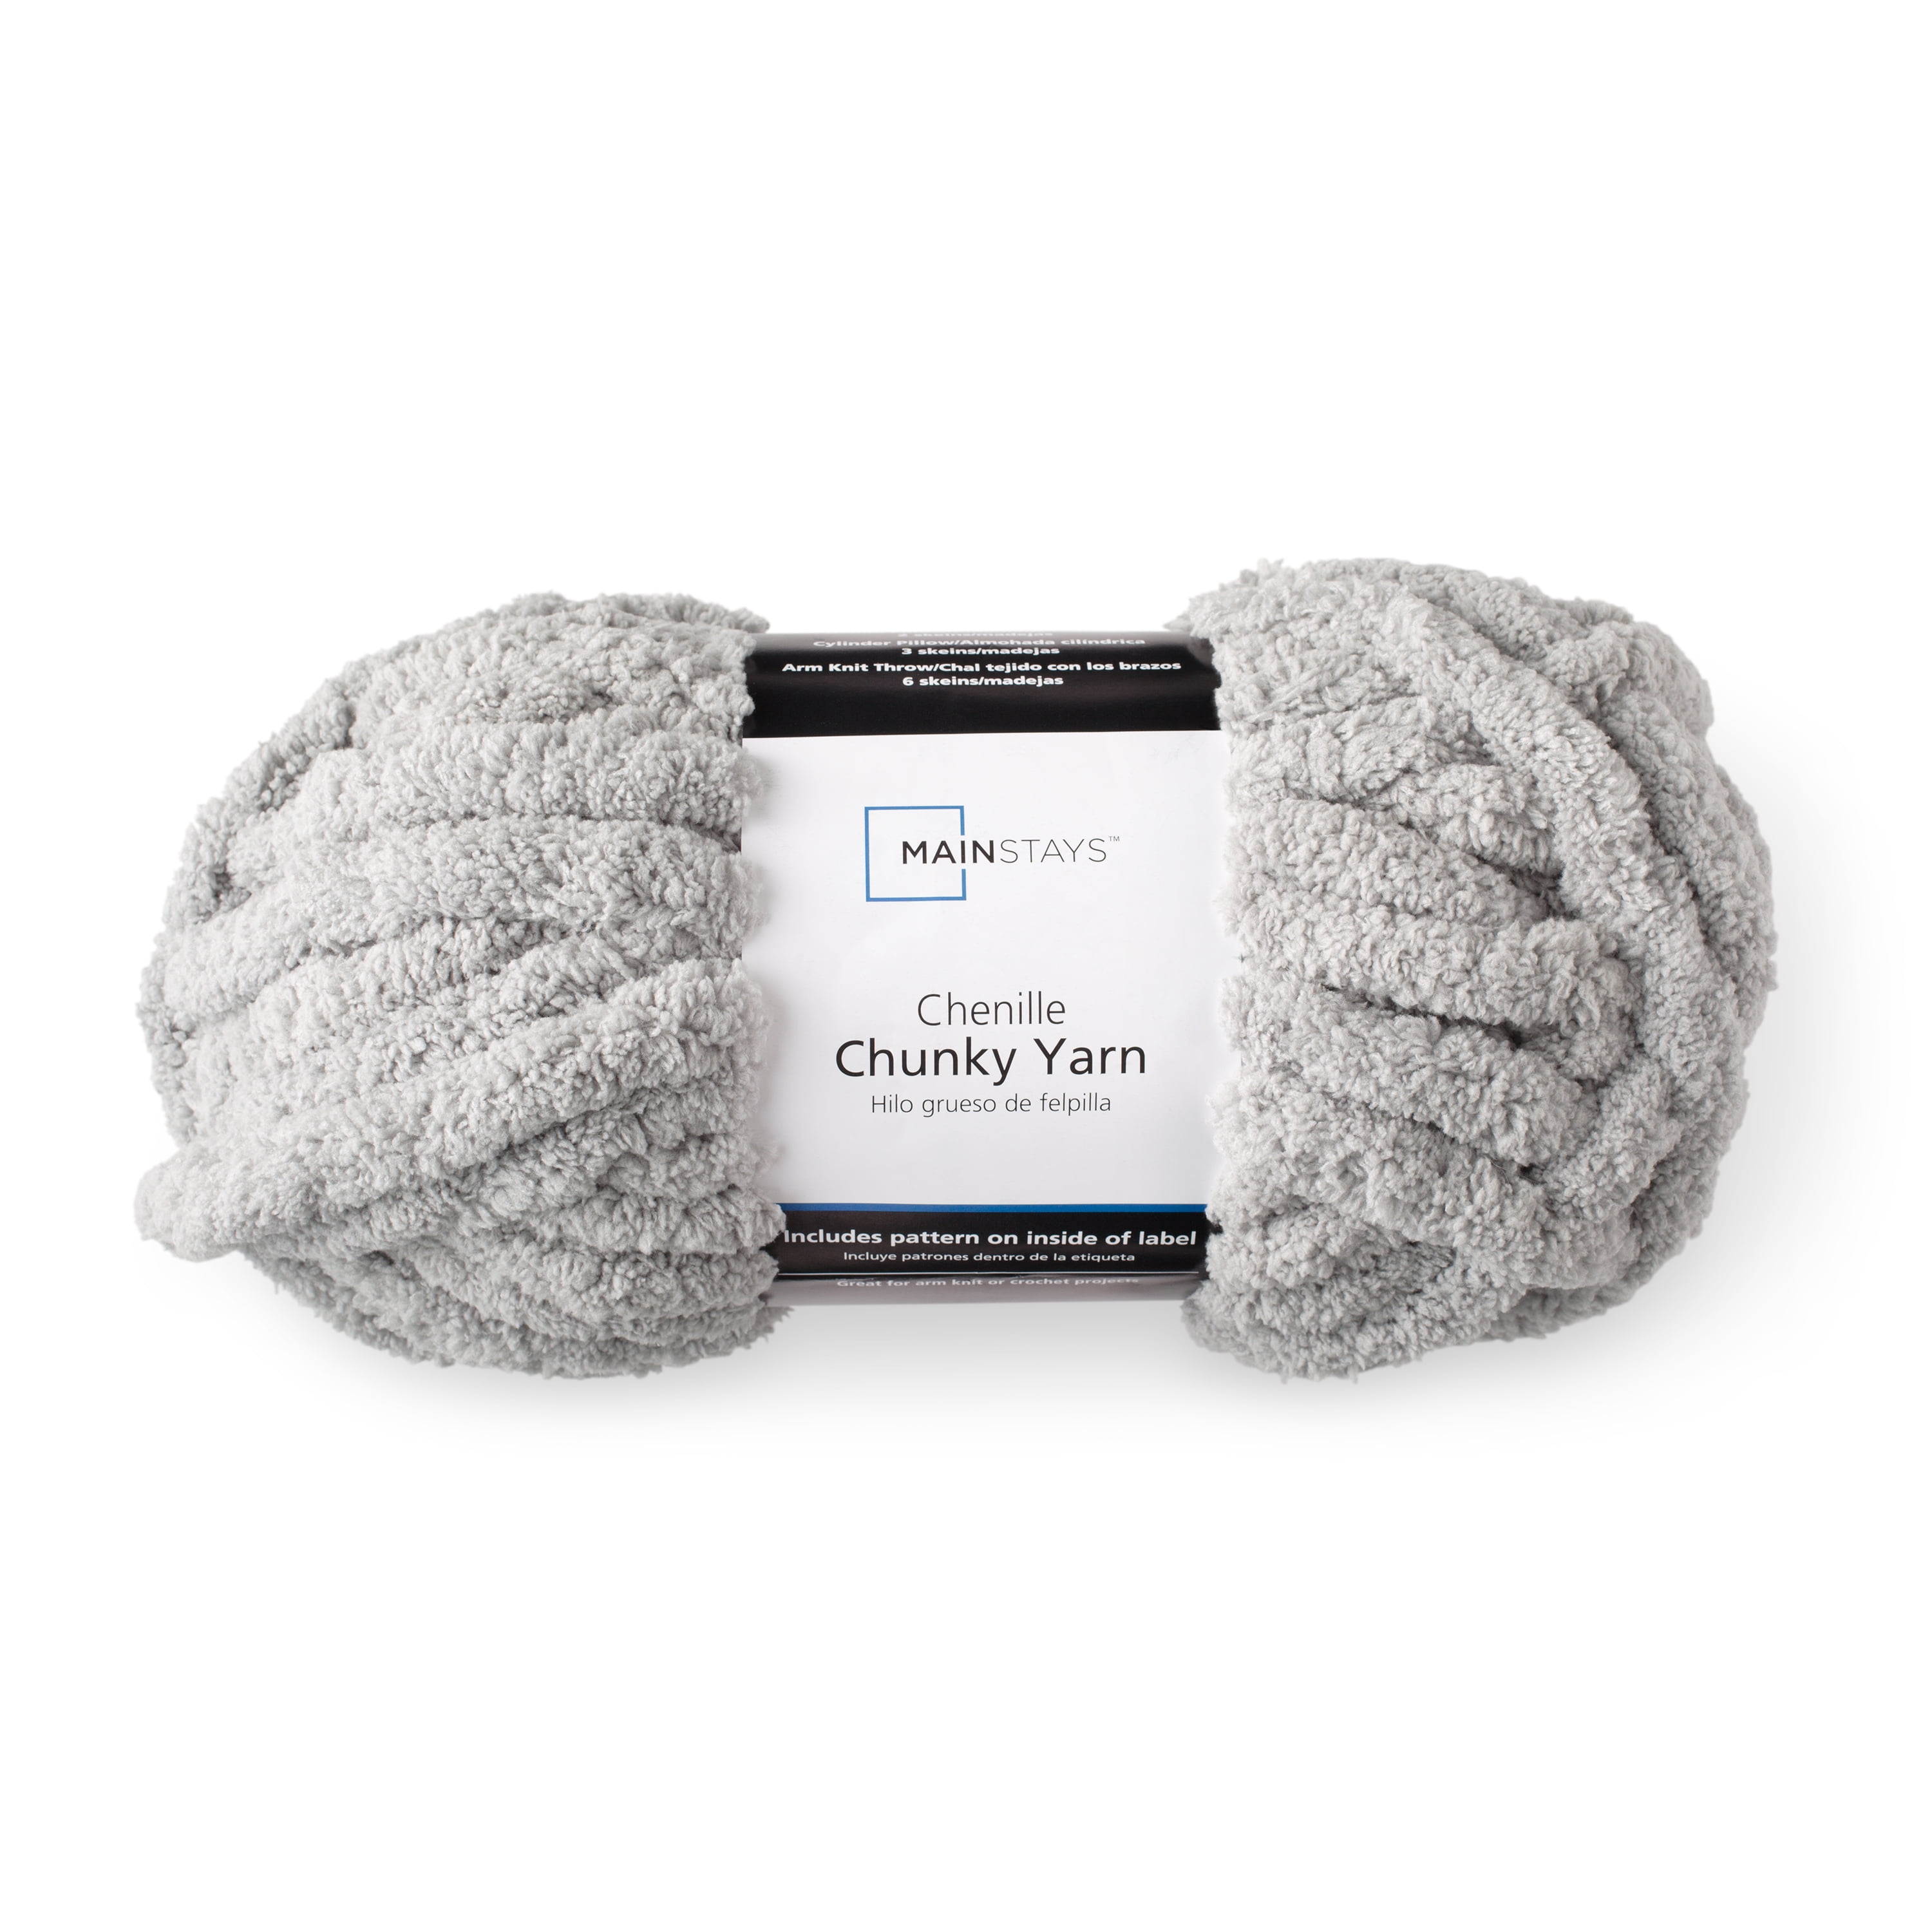 100g Creamy Viscose Yarn For Knitting Italian Yarn on Cone per 3.5oz